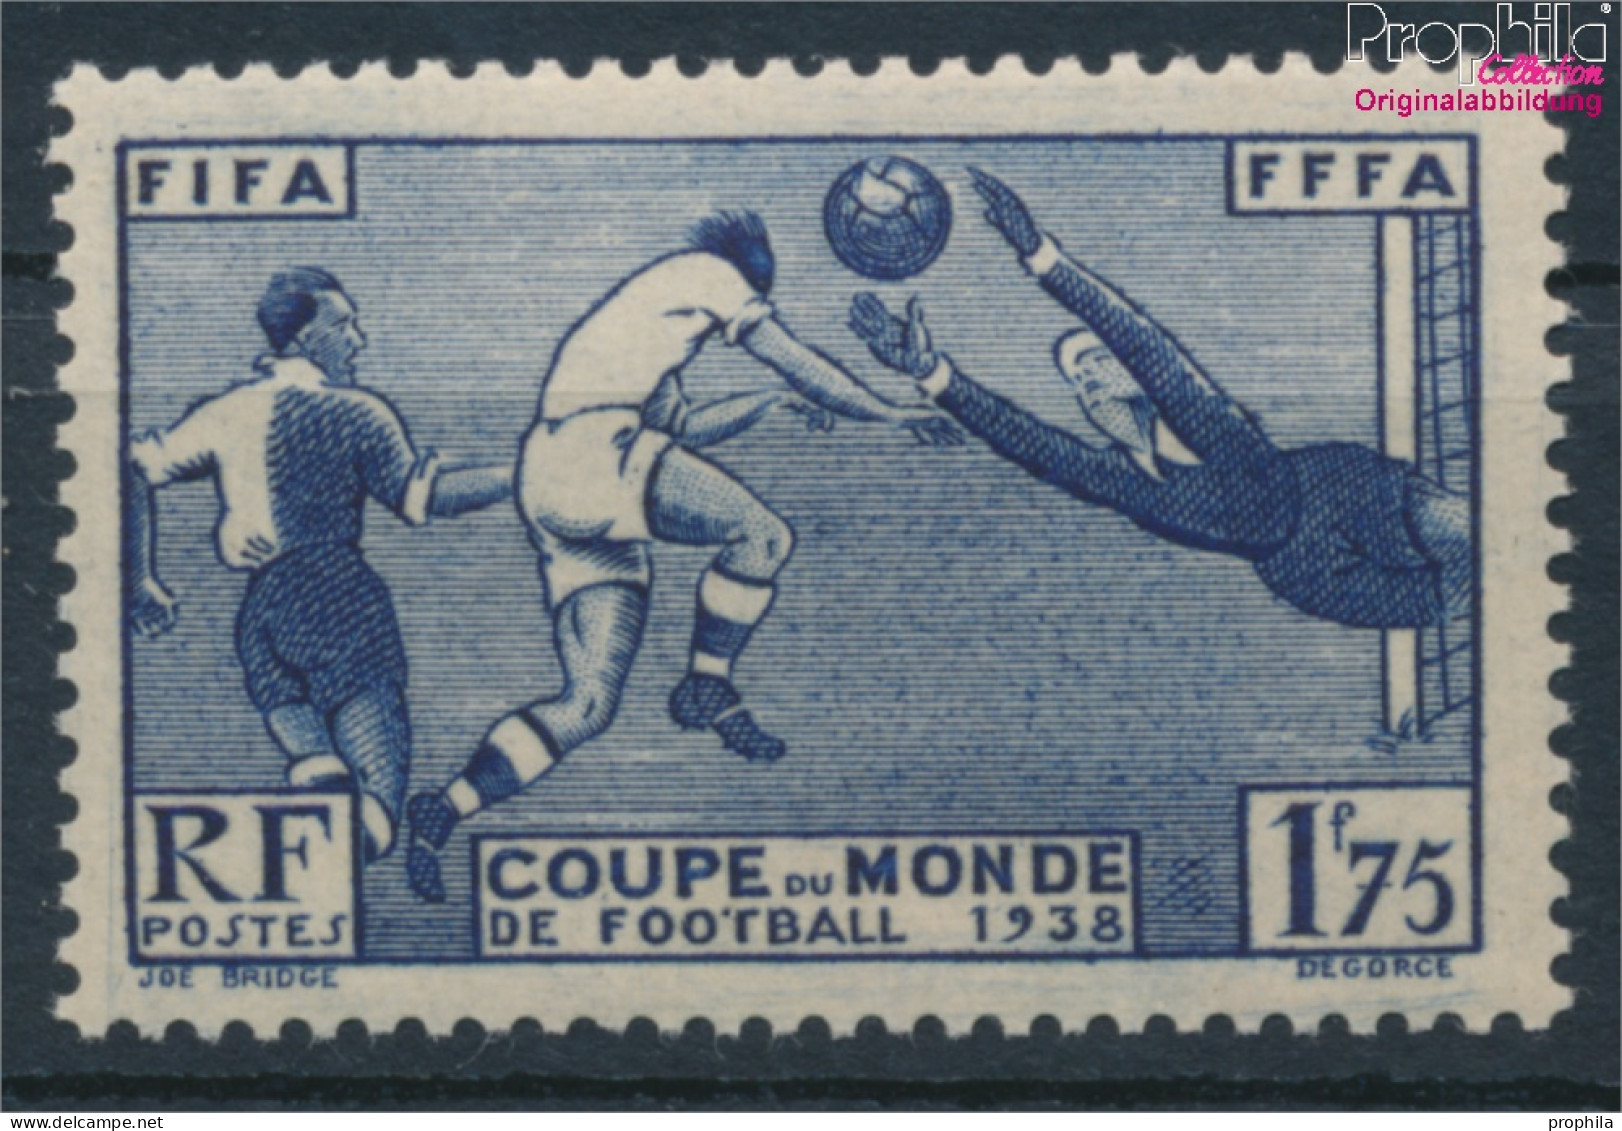 Frankreich 427 (kompl.Ausg.) Postfrisch 1938 Fußball-WM (10391182 - Neufs